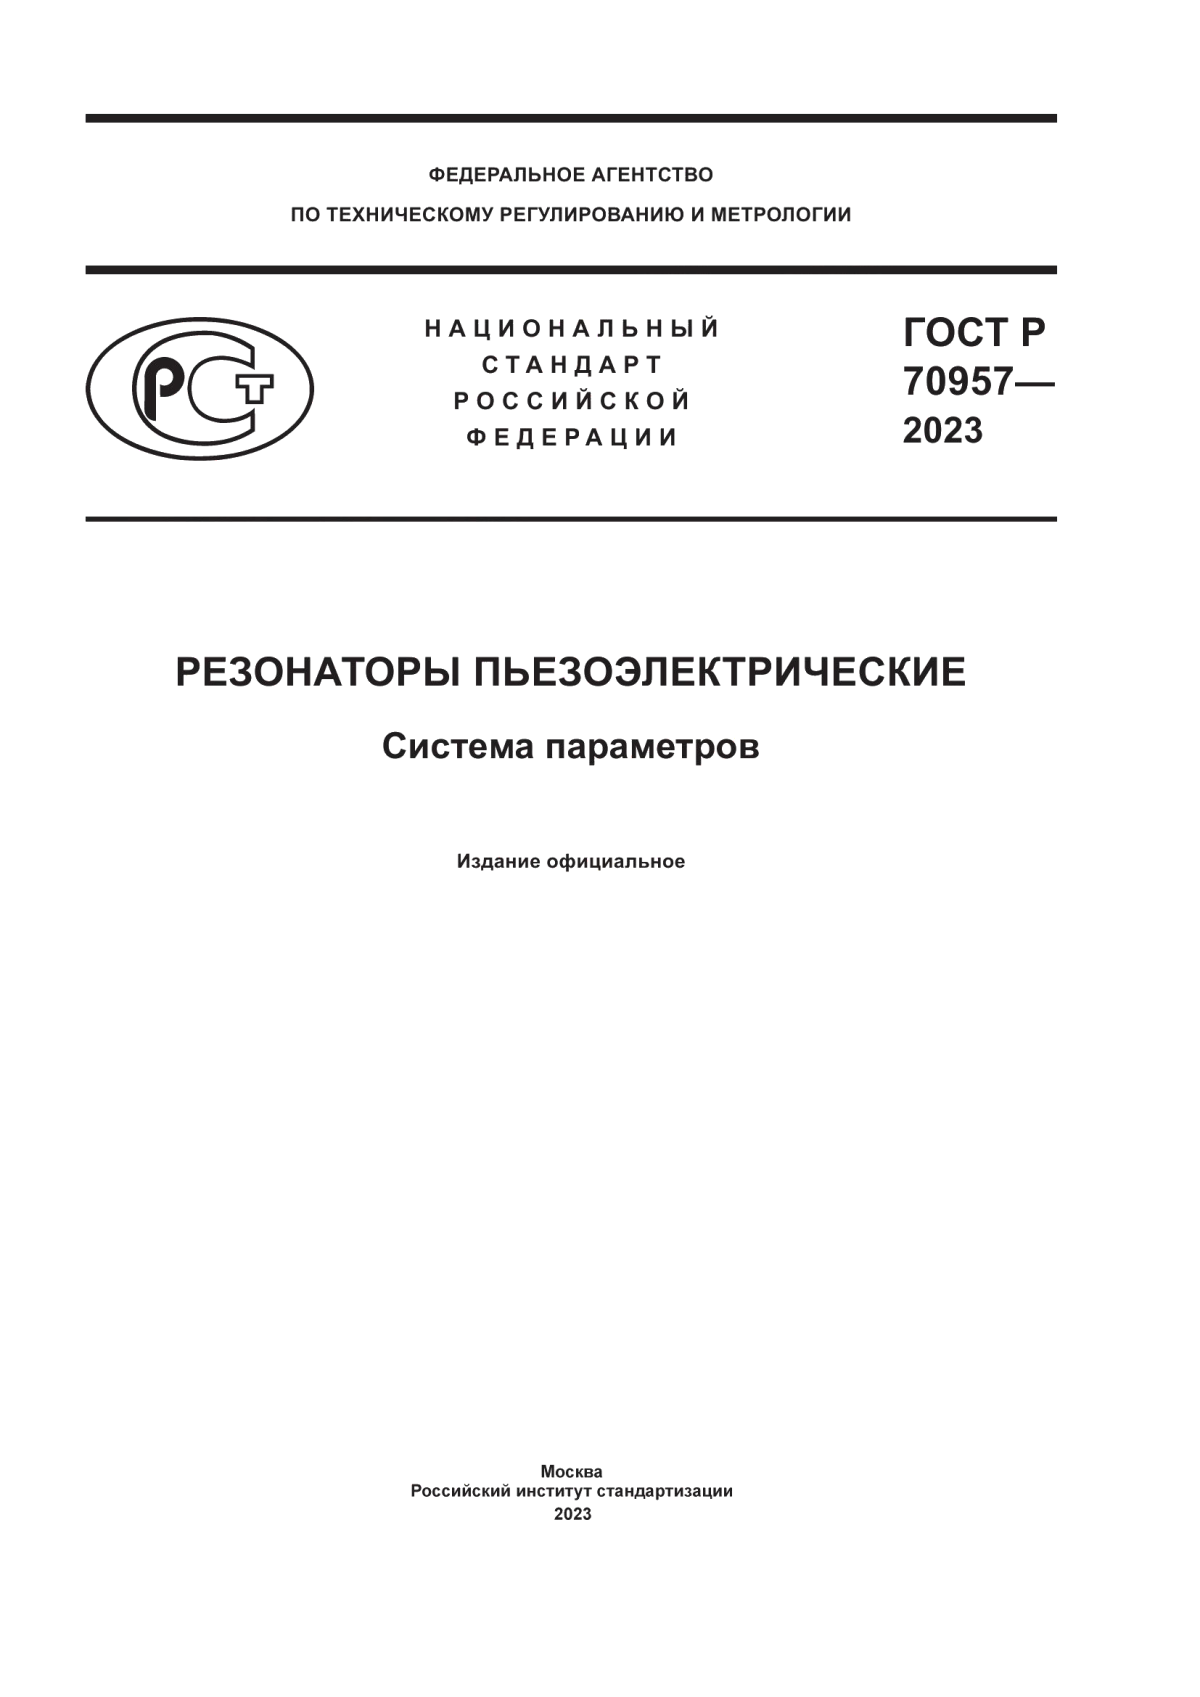 ГОСТ Р 70957-2023 Резонаторы пьезоэлектрические. Система параметров